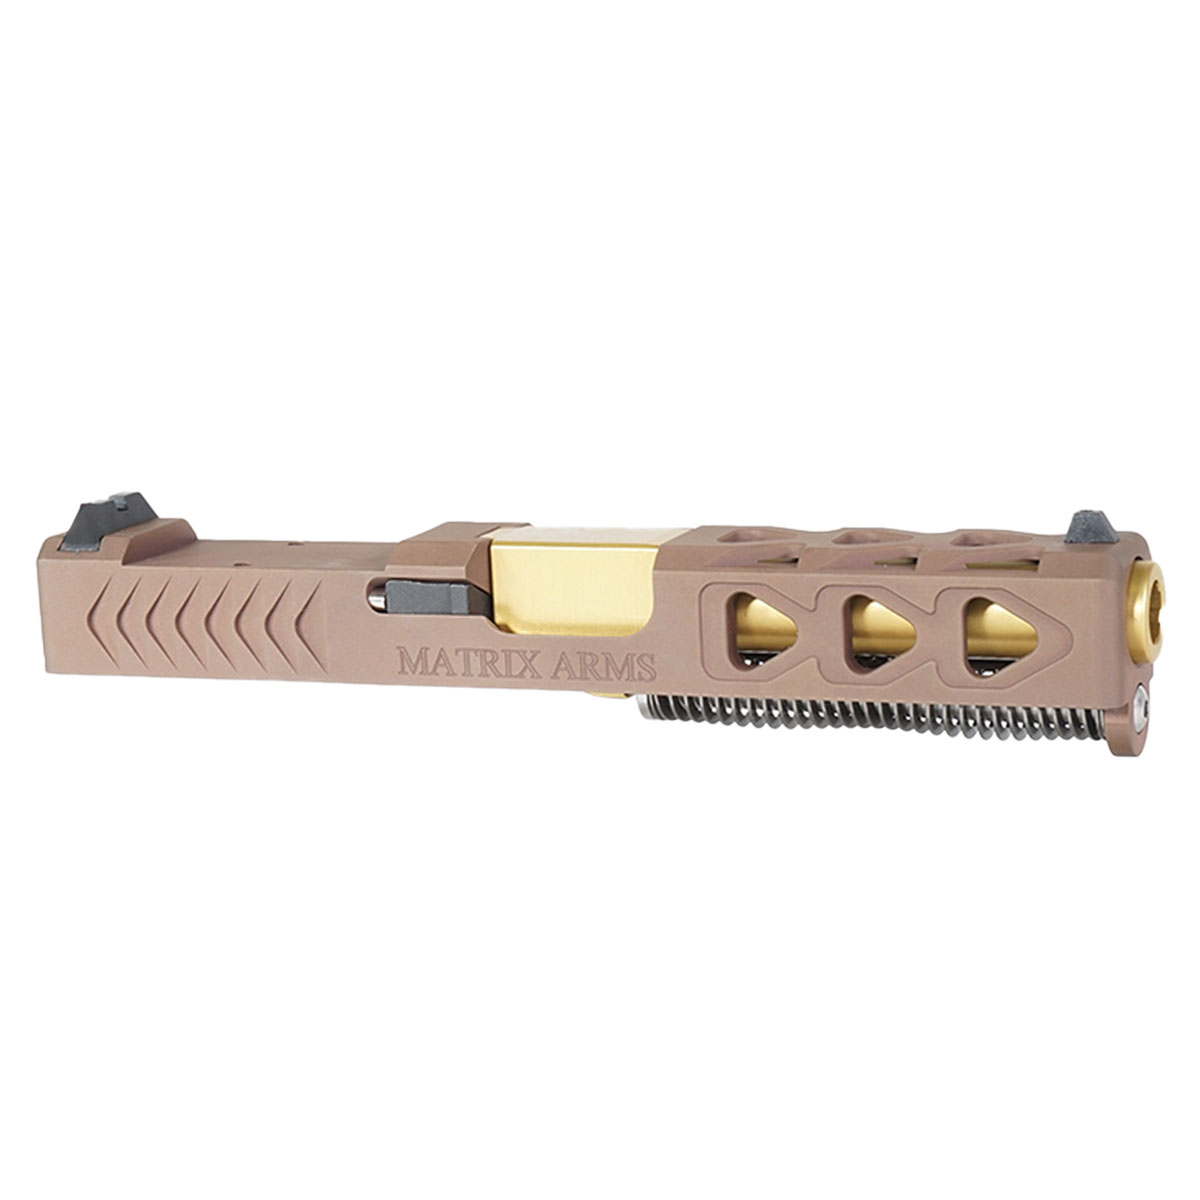 OTD 'Bellator Nidum' 9mm Complete Slide Kit - Glock 19 Gen 1-3 Compatible